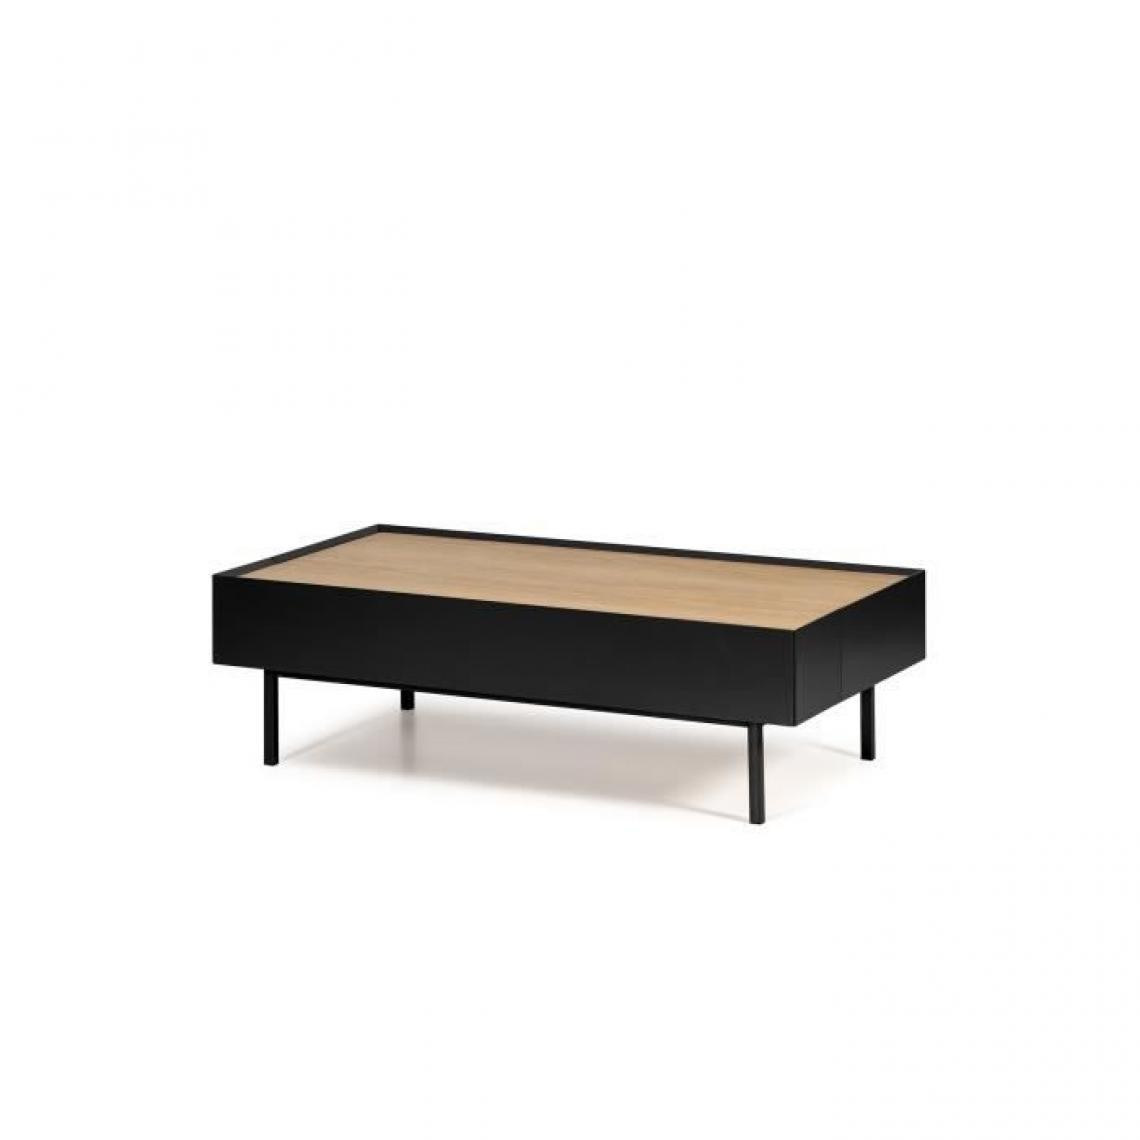 Cstore - ARISTA Table basse 2 tiroirs - Décor chene et noir - L 110 x P 60 x H 34 cm - Tables basses